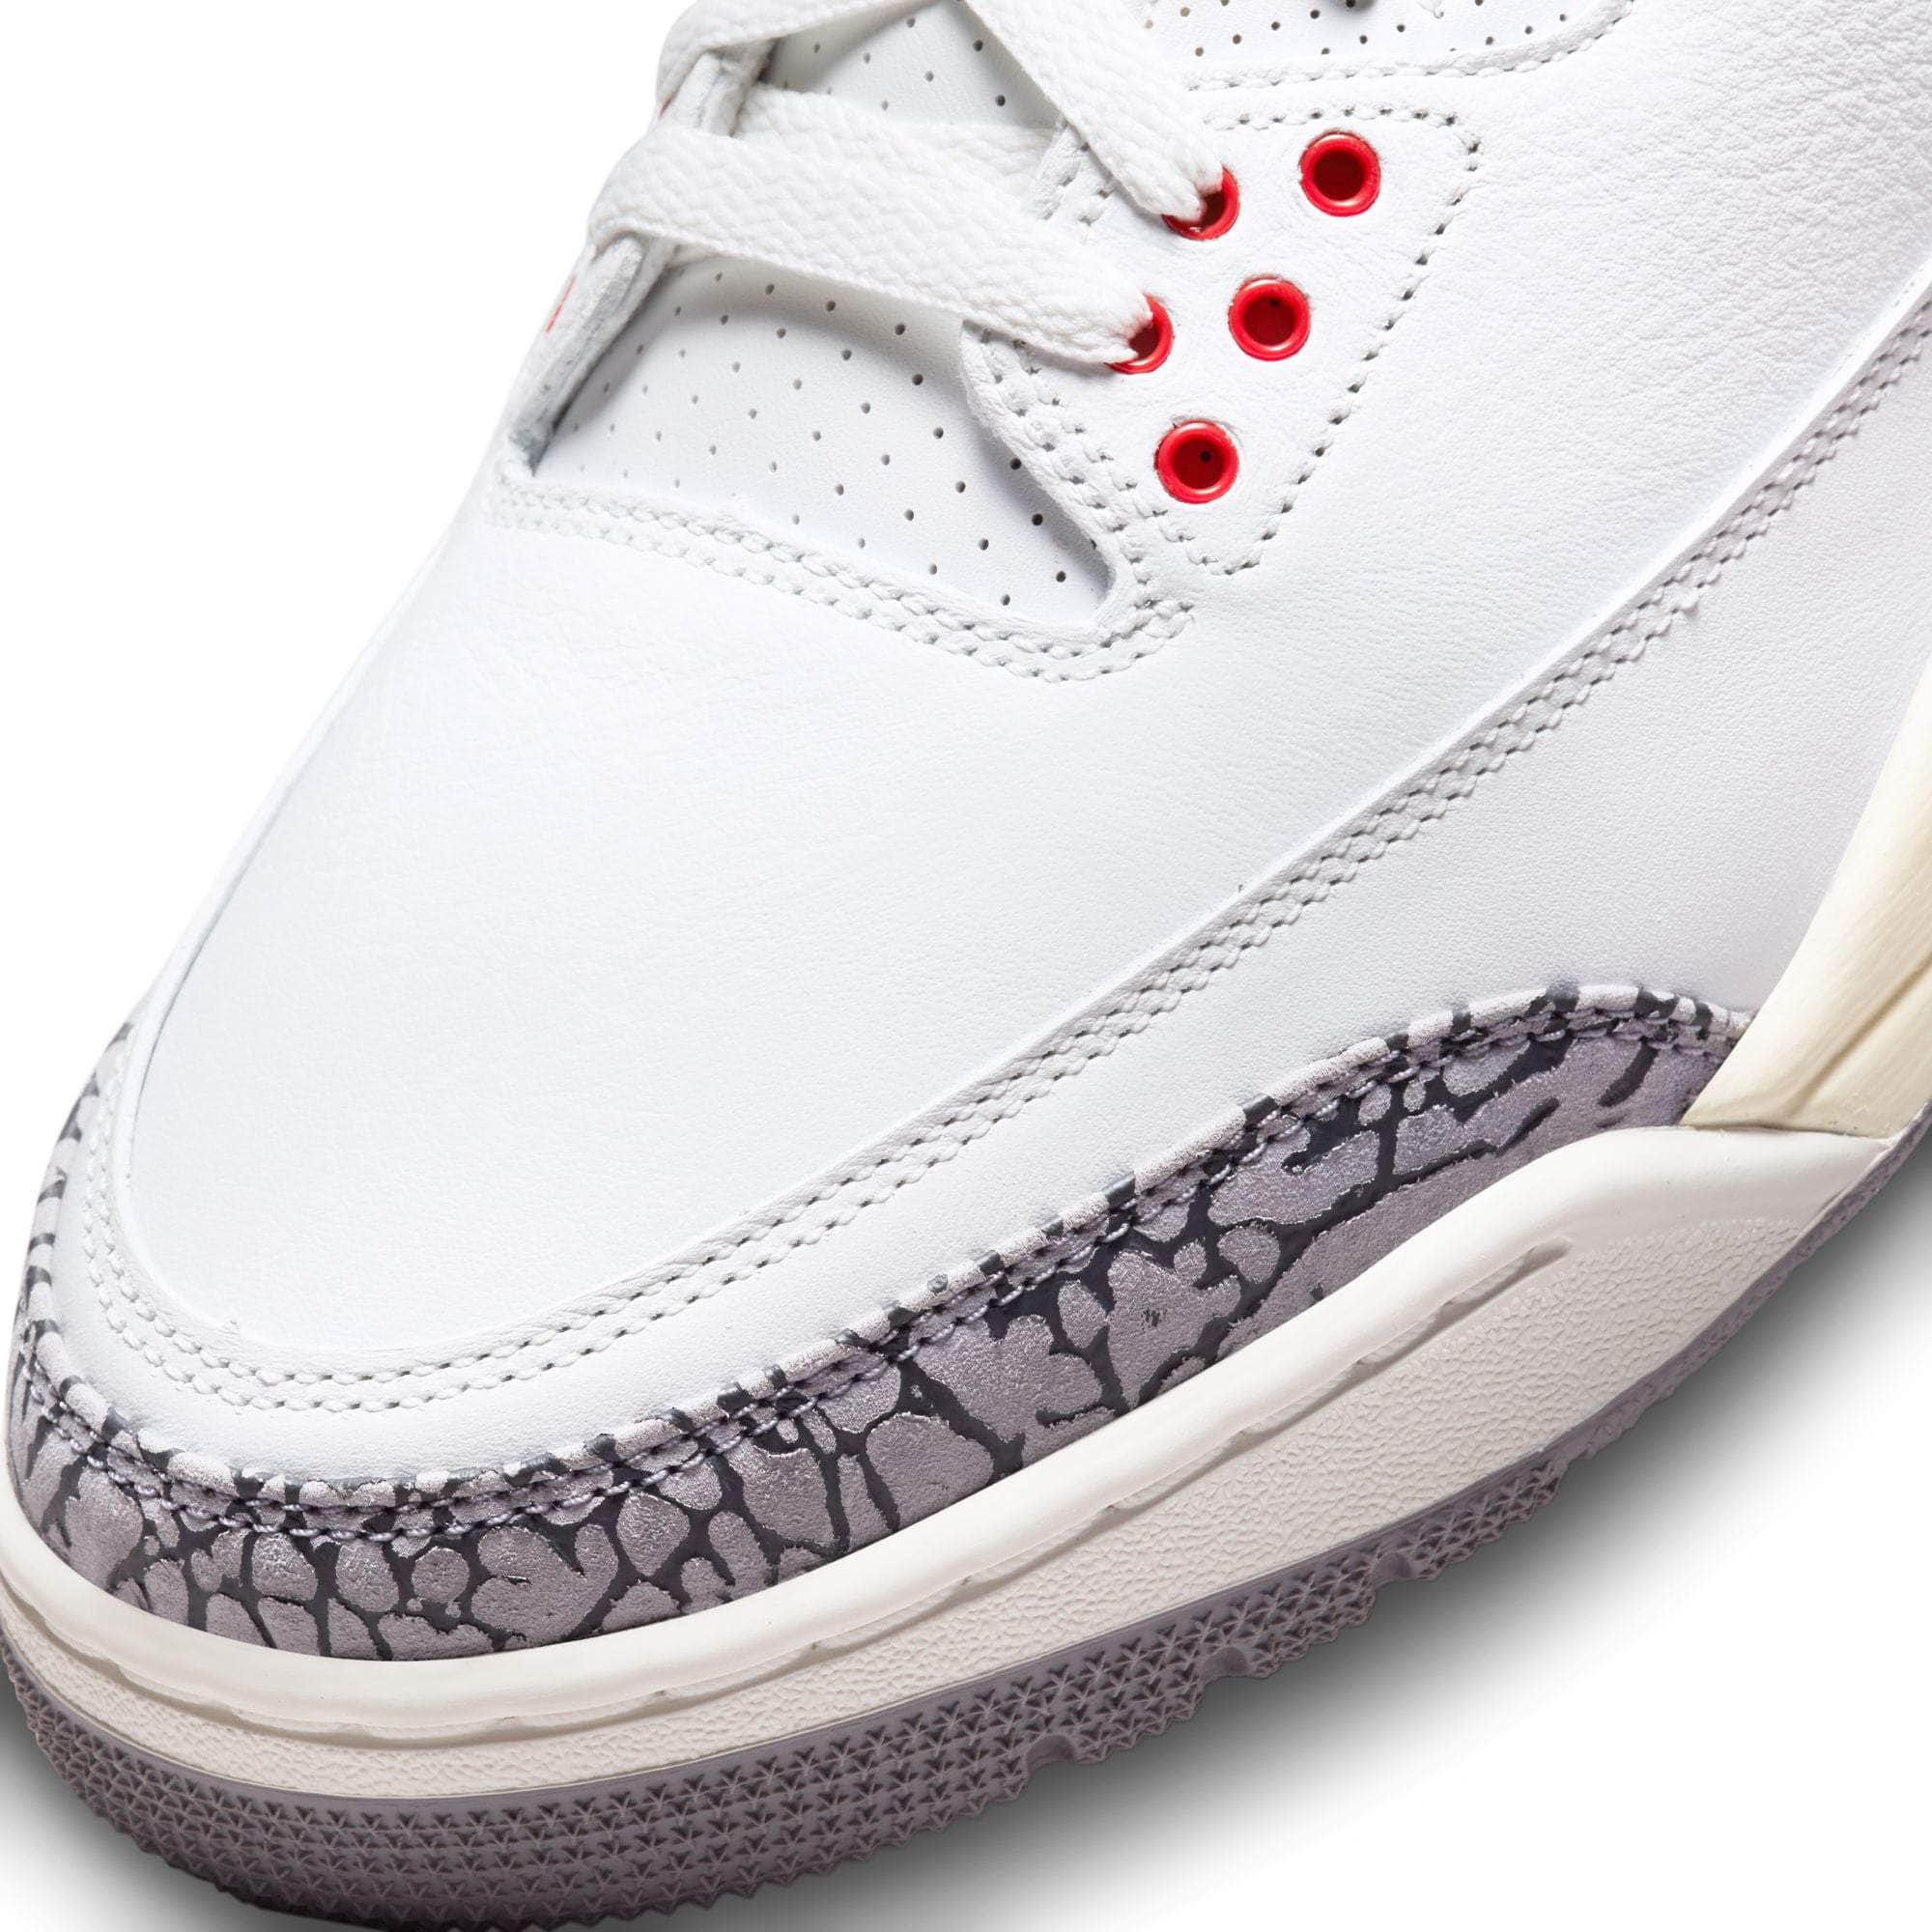 Air Jordan FOOTWEAR Air Jordan 3 Retro "White Cement Reimagined" - Men's